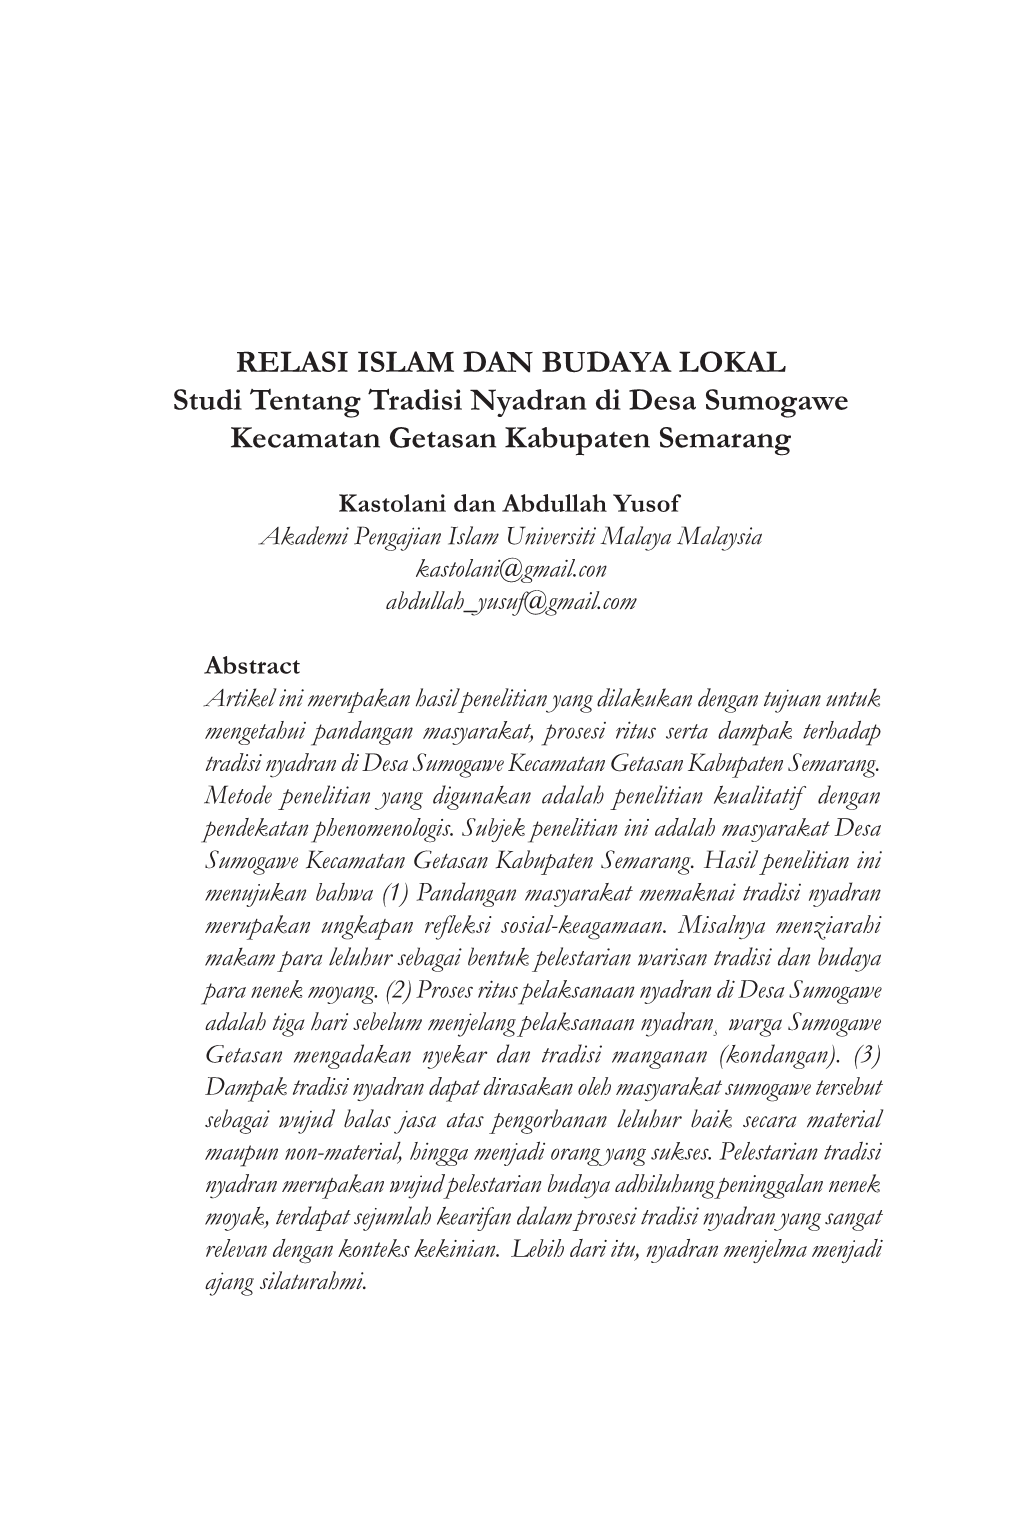 RELASI ISLAM DAN BUDAYA LOKAL Studi Tentang Tradisi Nyadran Di Desa Sumogawe Kecamatan Getasan Kabupaten Semarang